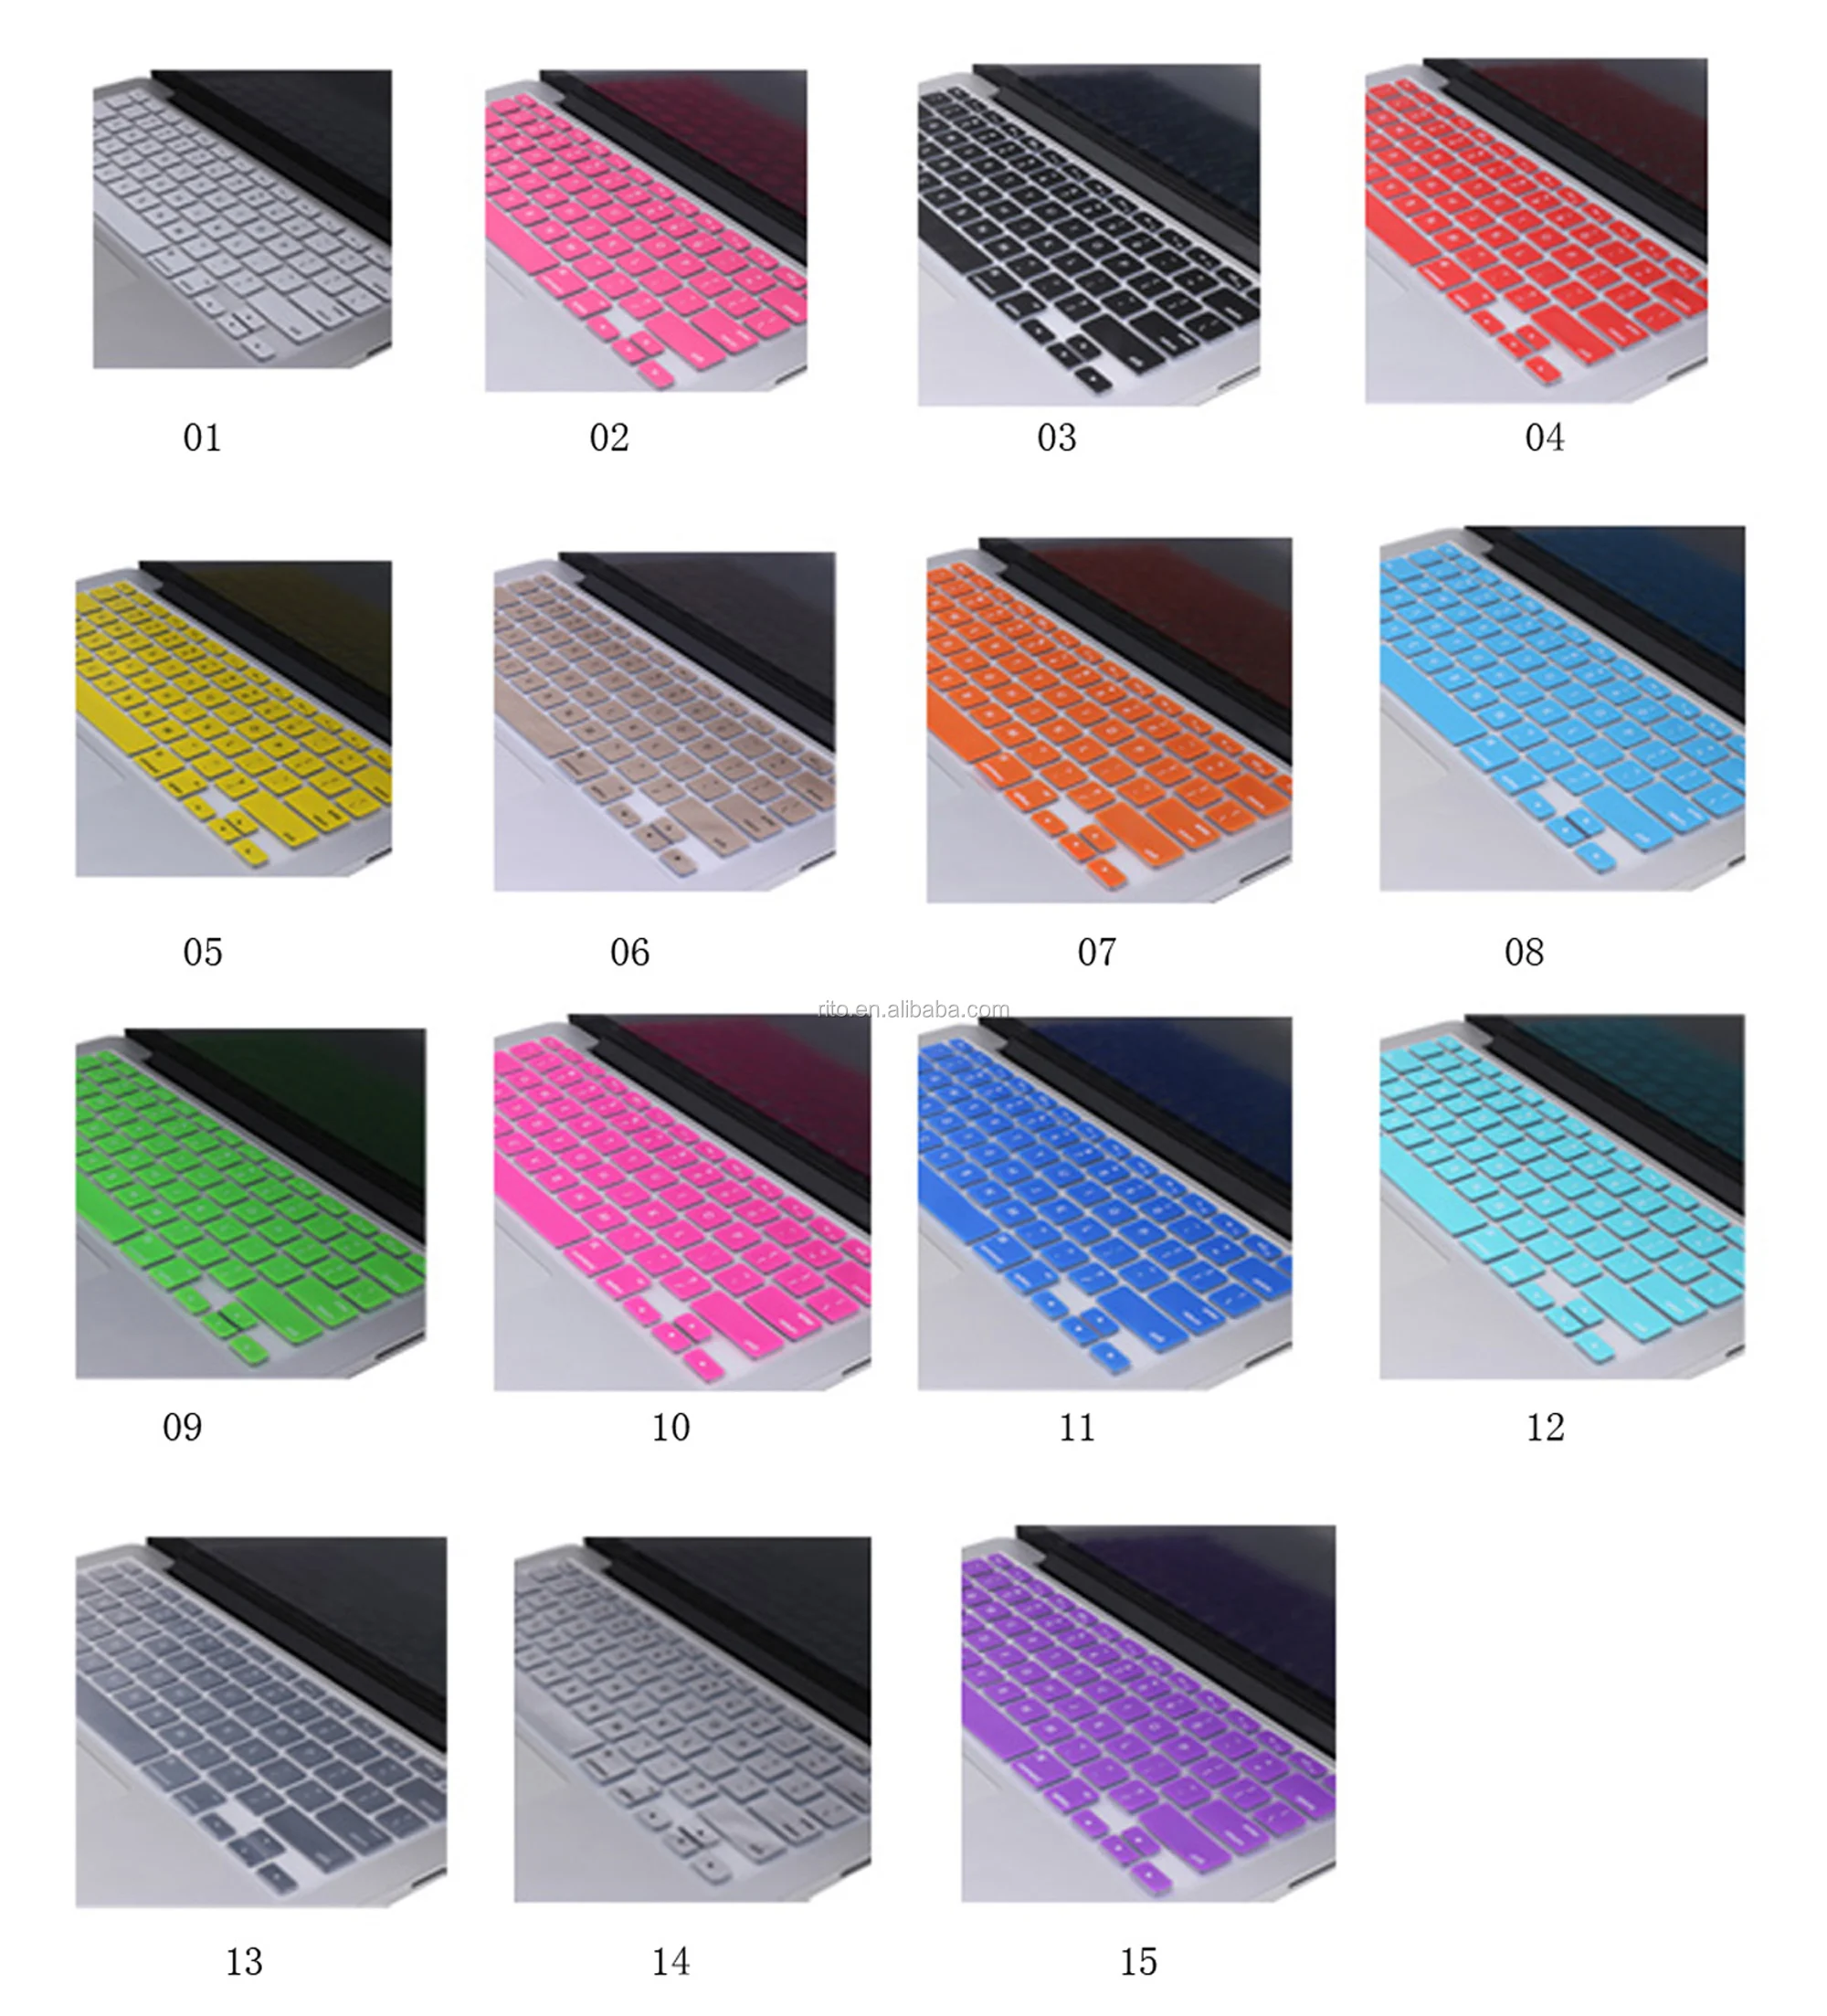 Silicone keyboard covers 2.jpg